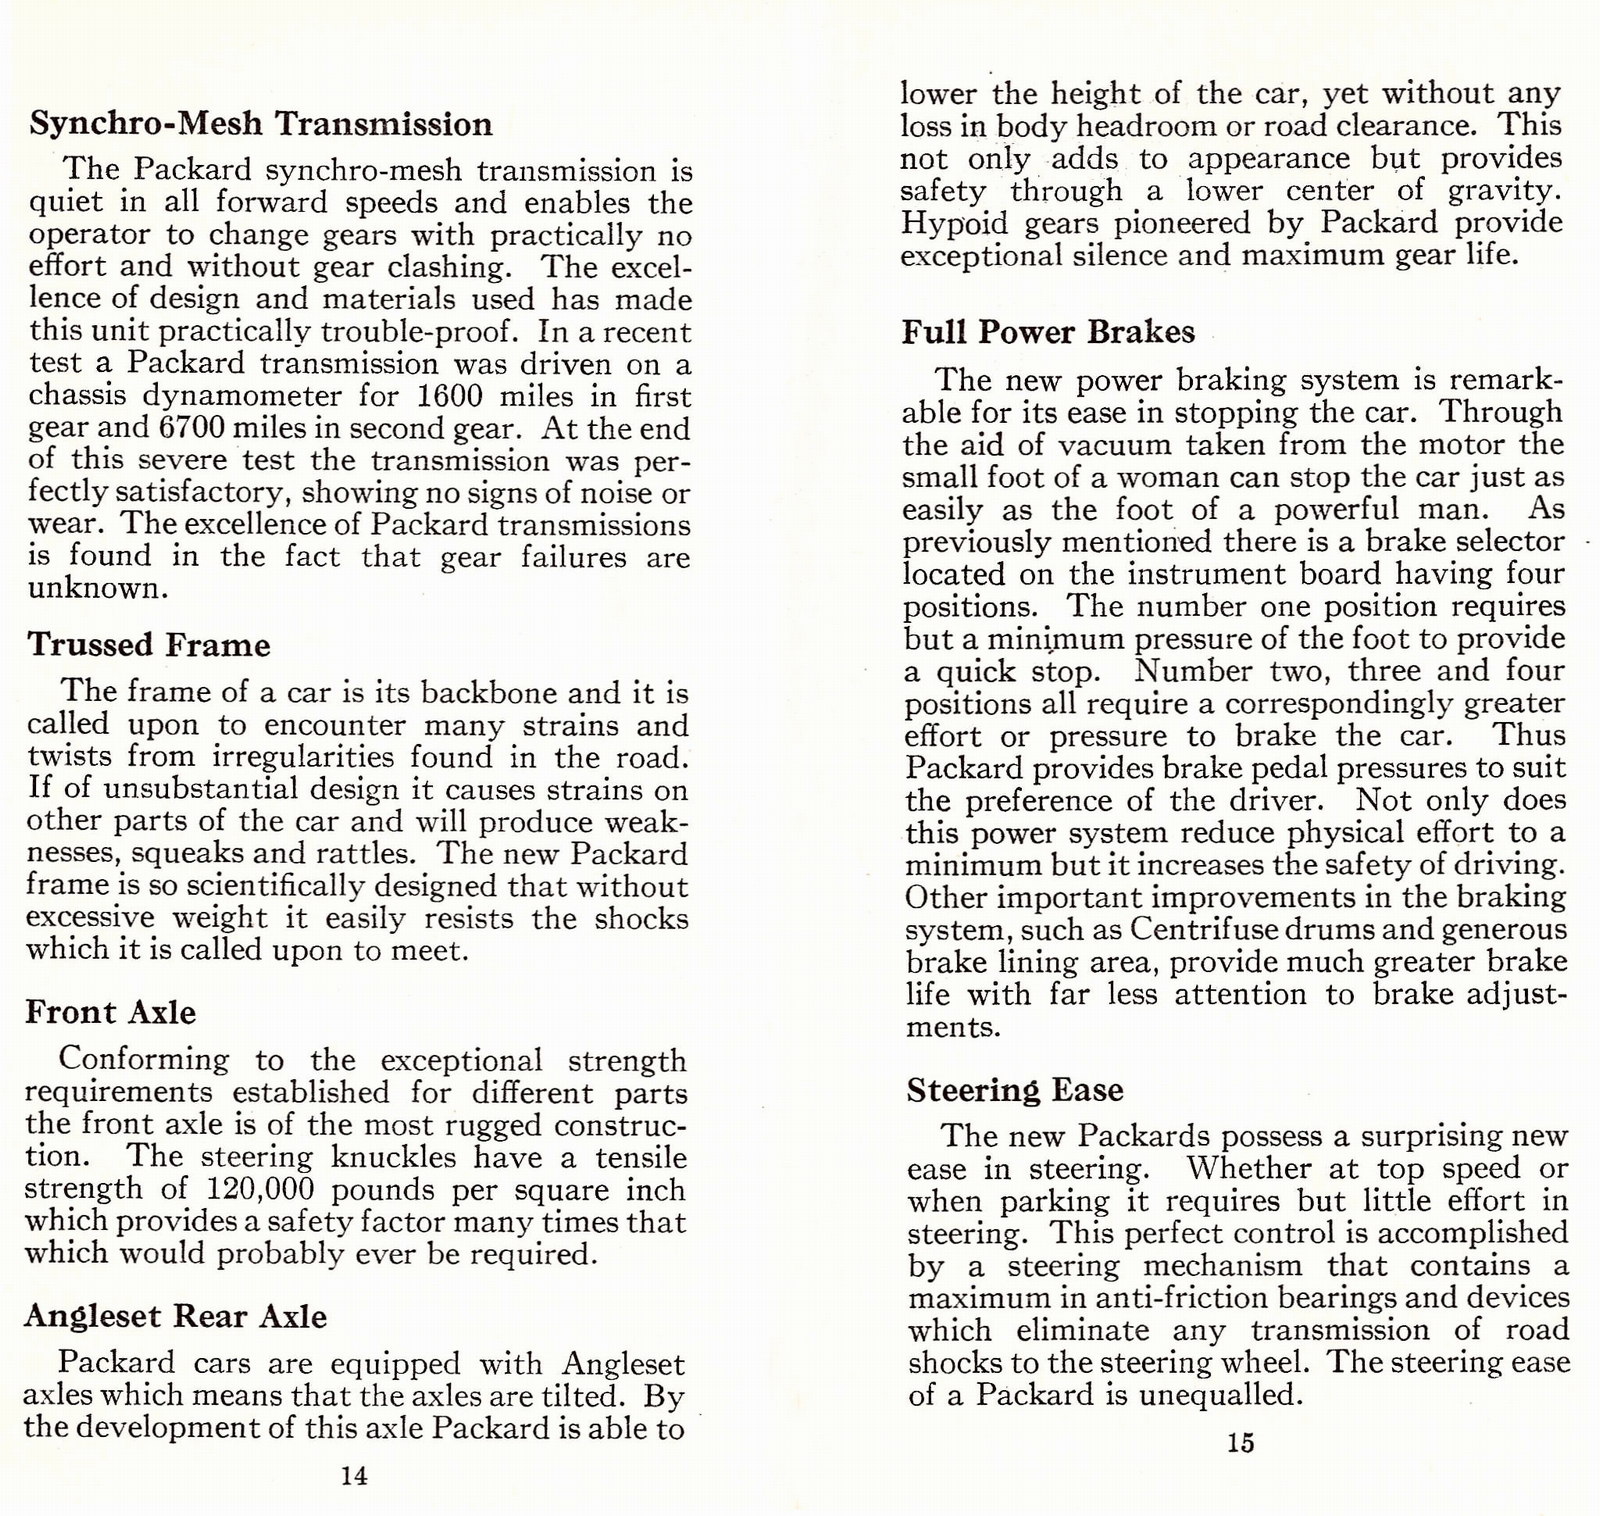 n_1933 Packard Facts Booklet-14-15.jpg